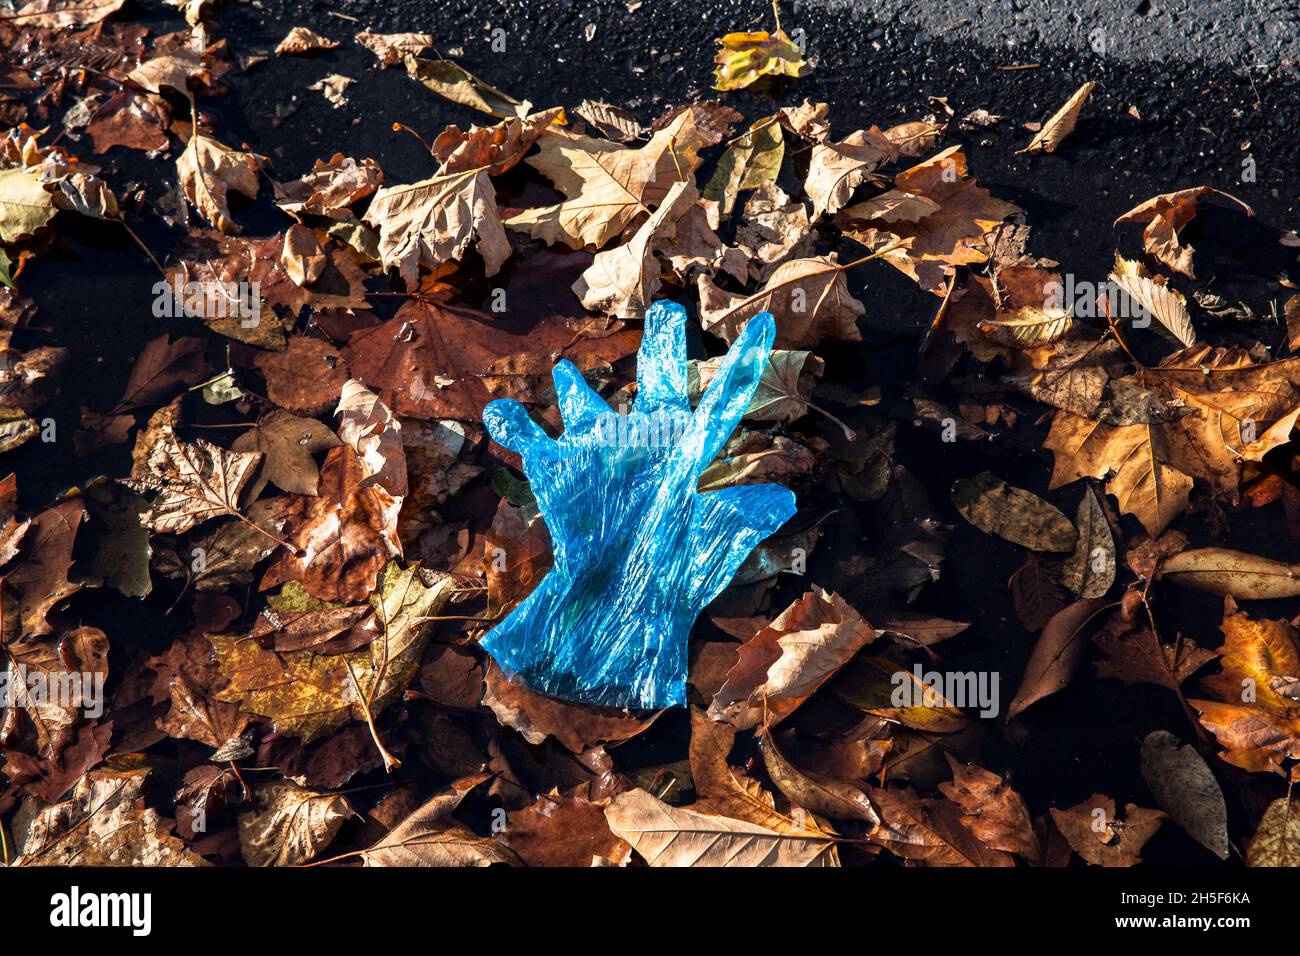 Un guante plástico azul se encuentra en las hojas de otoño en la carretera, Colonia, Alemania. ein blauer Plastikhandschuh liegt im Herbstlaub am Strassenrand, Koeln, Foto de stock